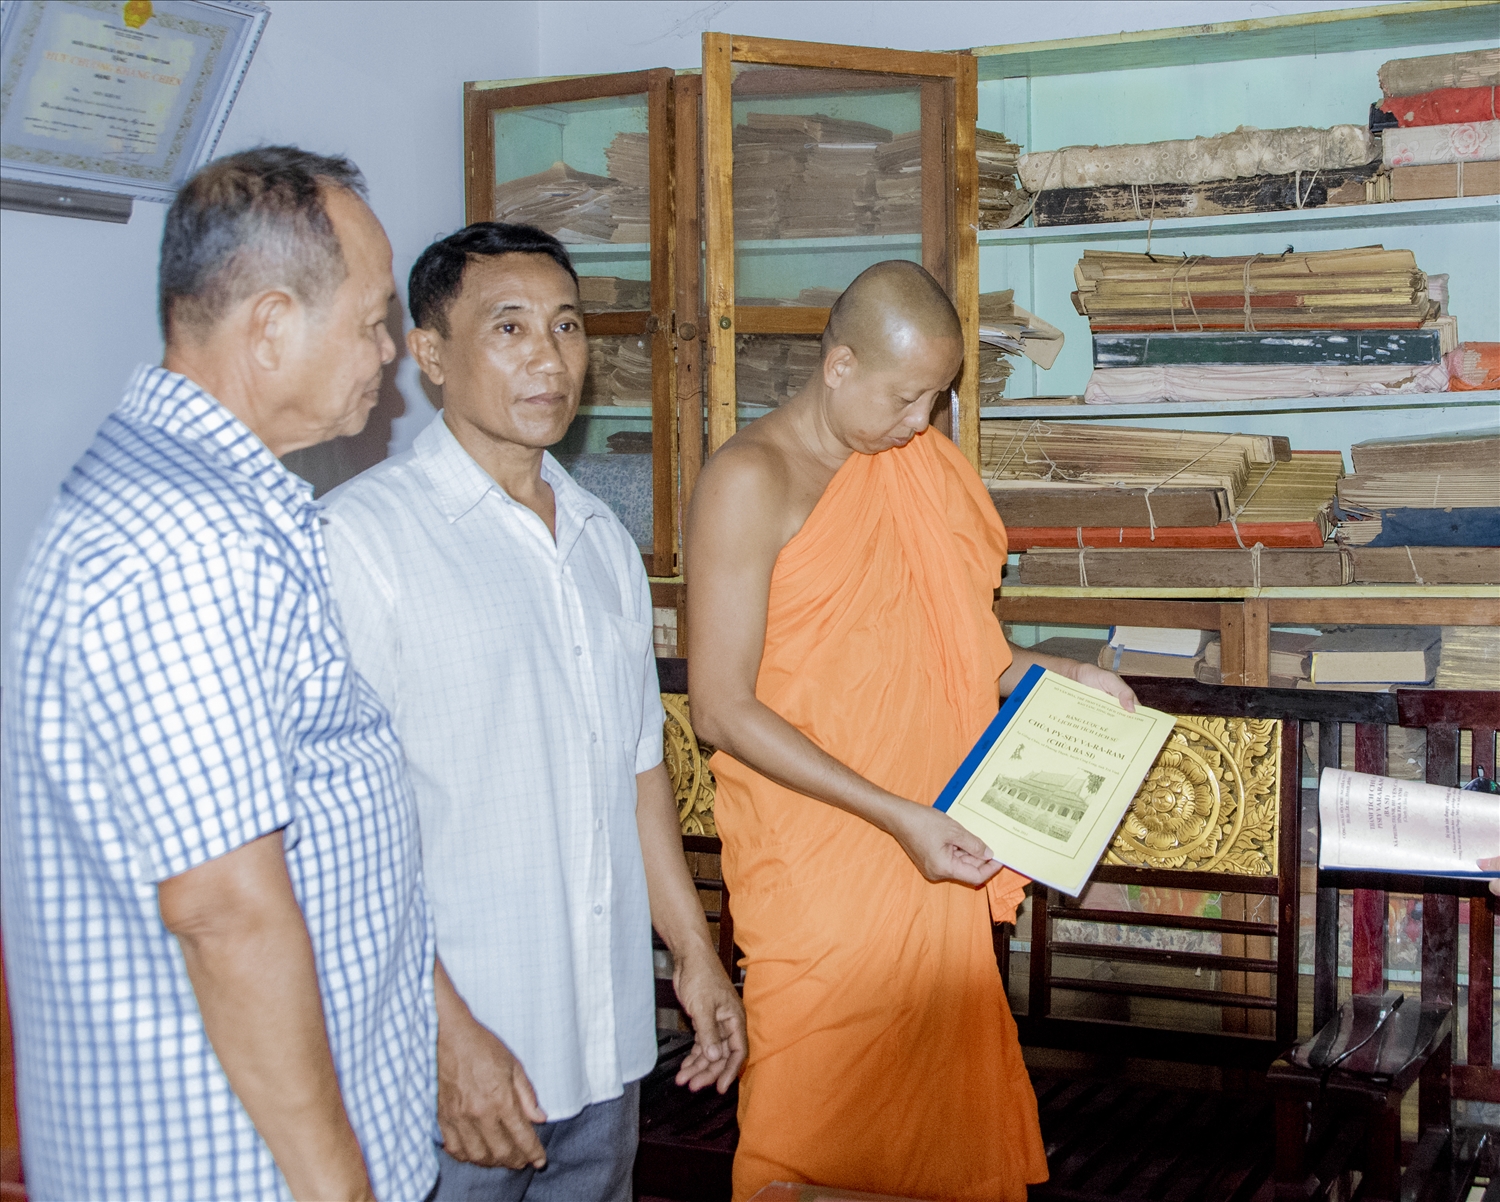 Sau khi Thường trực Hội ĐKSSYN huyện Càng Long ( Trà Vinh) thống nhất nội dung tuyên truyền , đưa dịch sang chữ Khmer và in ra để phát cho đại biểu